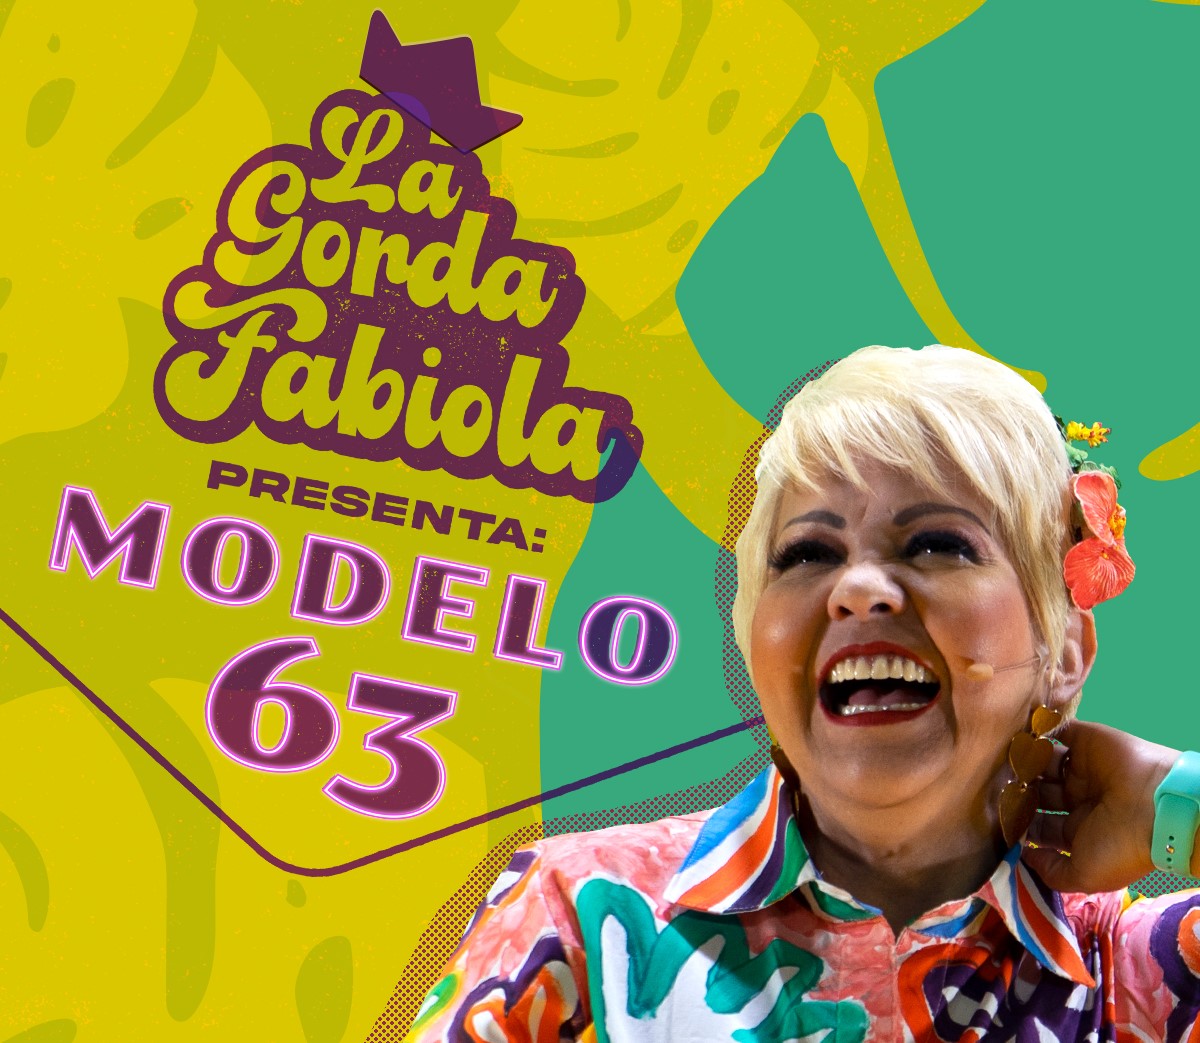 La gorda Fabiola: modelo 63